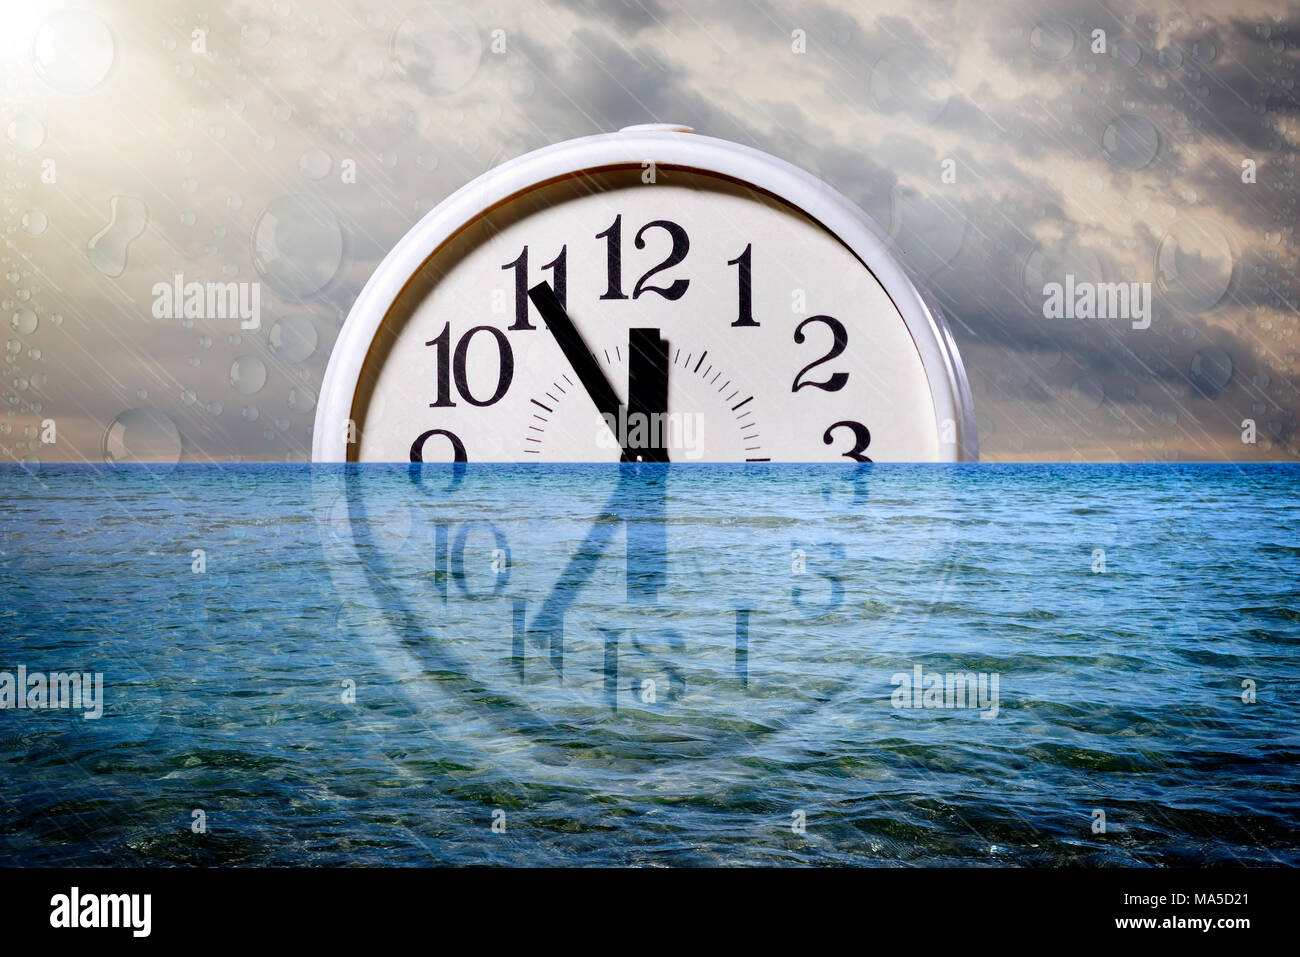 Reloj en el agua, cinco a doce, imagen simbólica del cambio climático Foto de stock